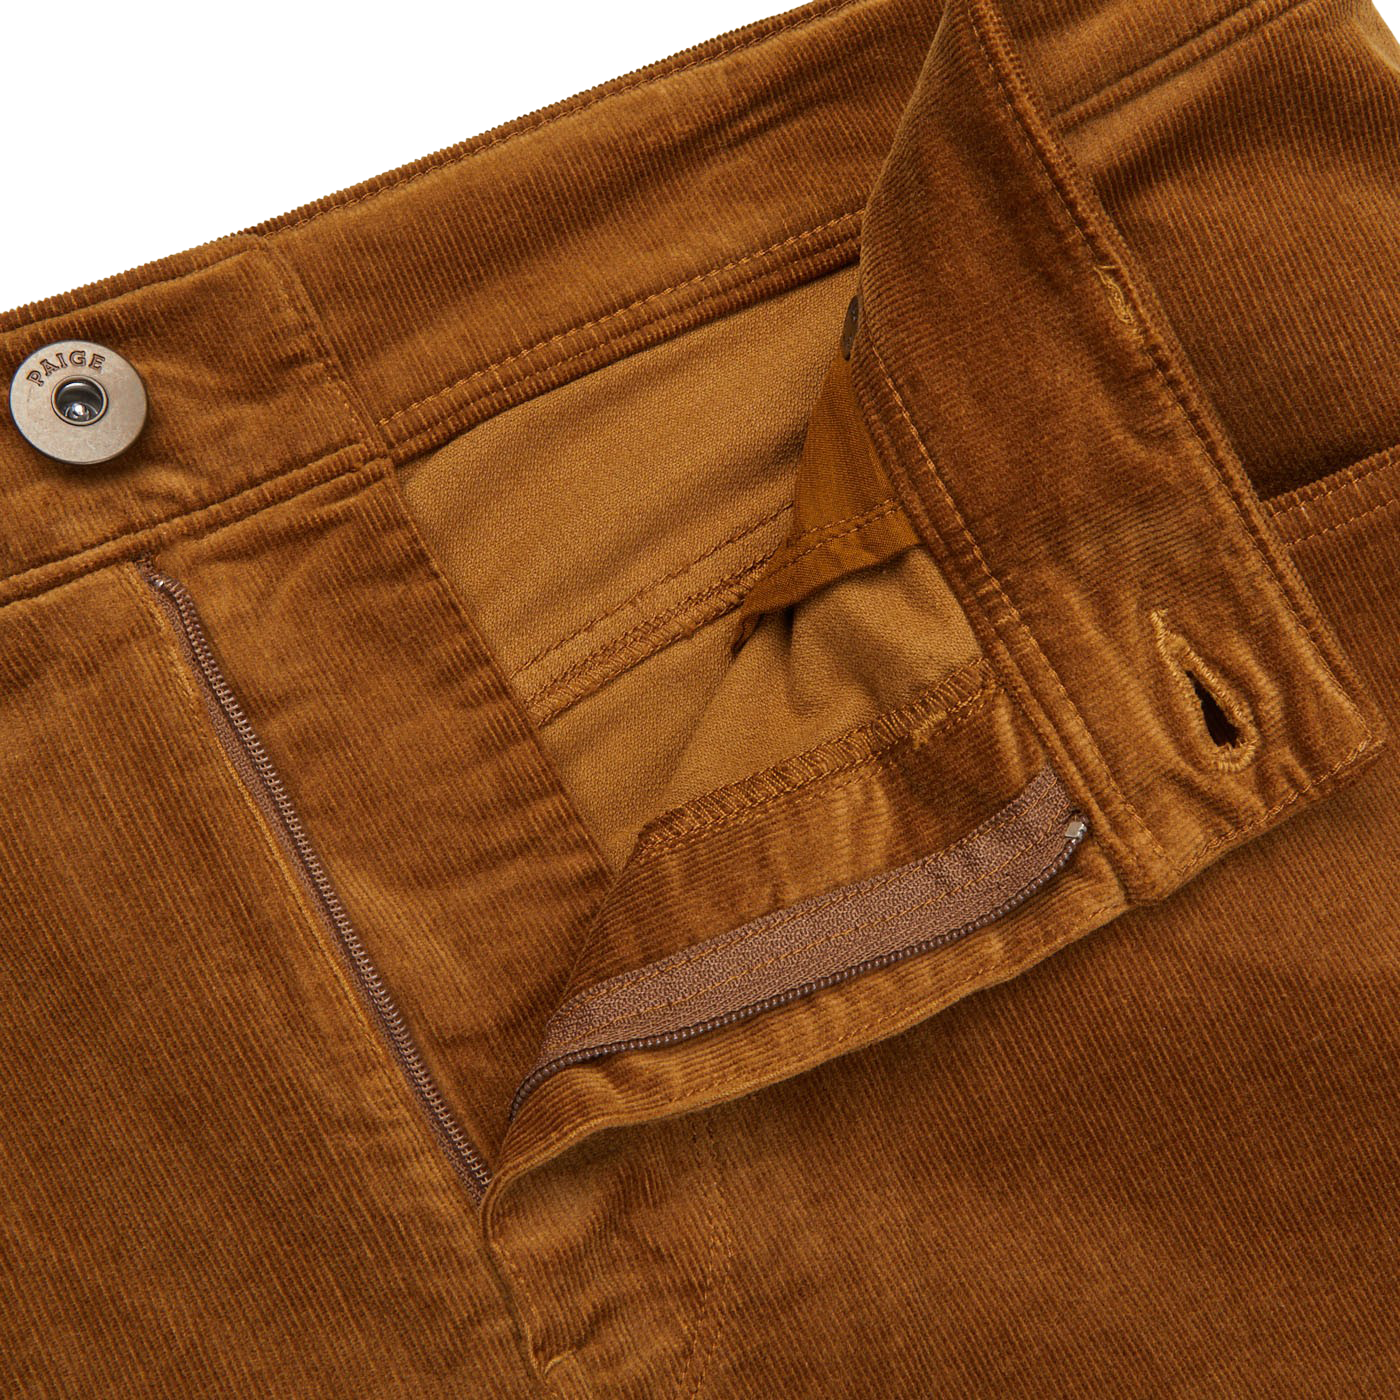 Paige Brown Cotton Corduroy Five Pocket Trousers Zipper